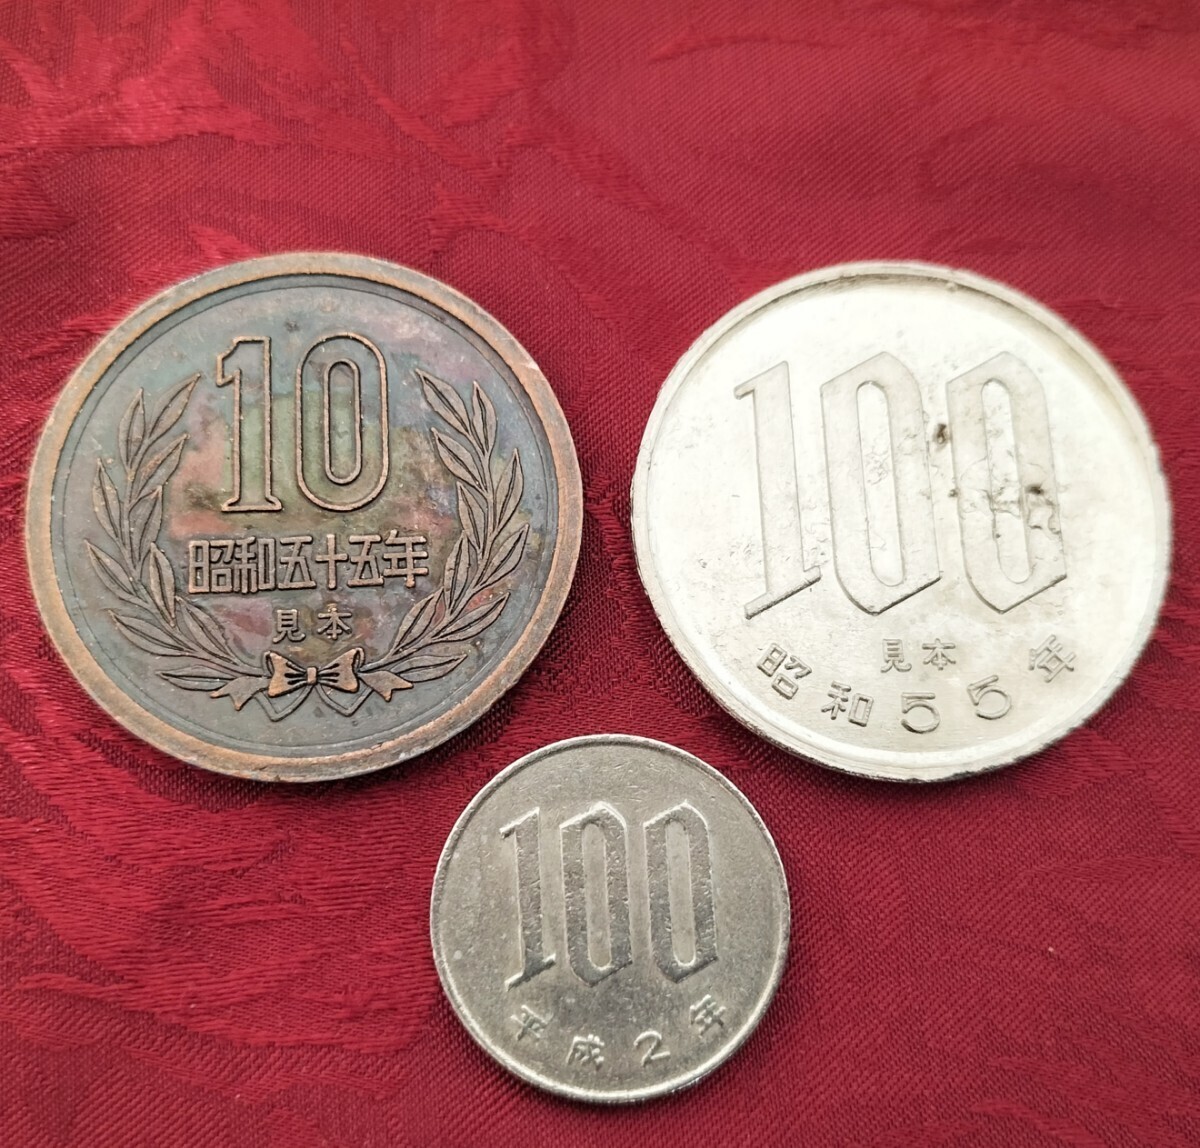 [*uke.! значительно становится монета средний размер jumbo монета 100 иен шар 100 иен 10 иен шар 10 иен монета Magic фокус монета через . деньги снят с производства!*]